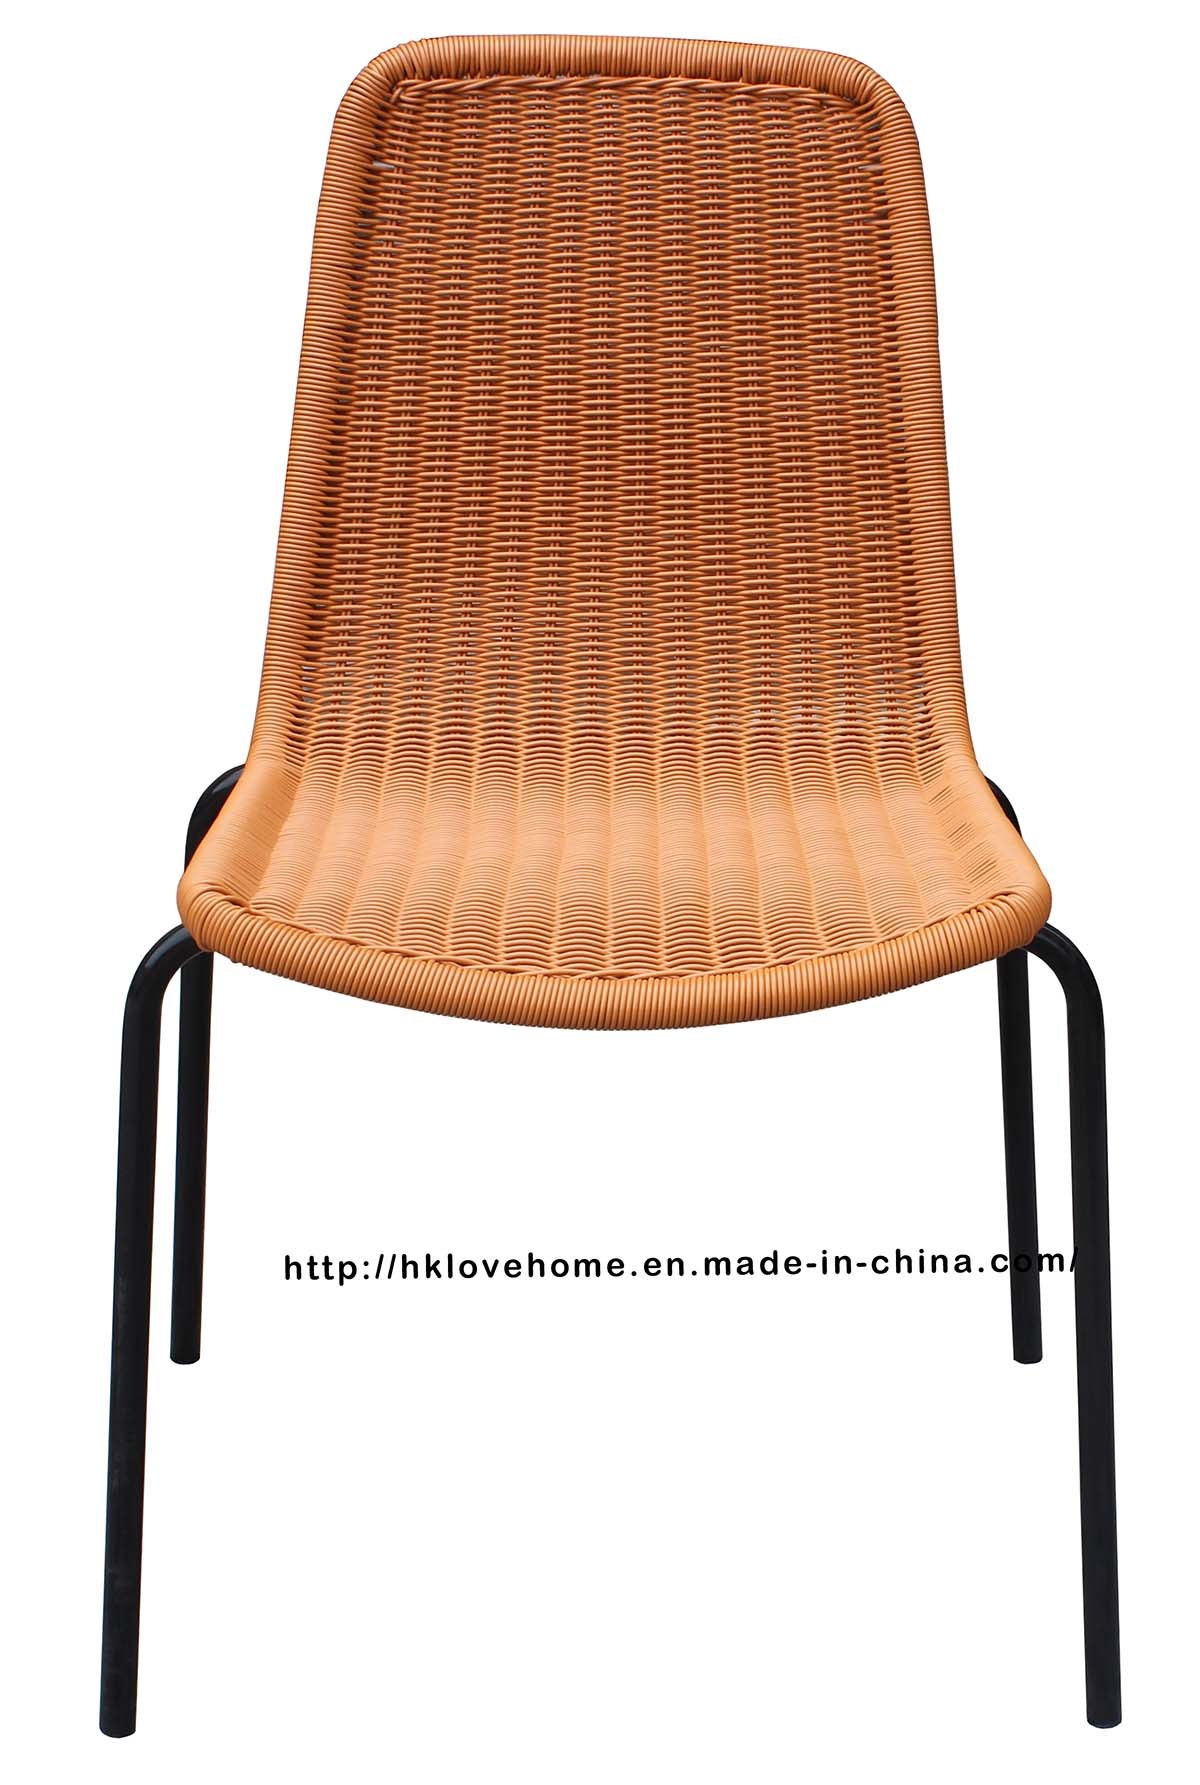 Replica Outdoor Indoor Leisure Metal Steel Rattan Chair